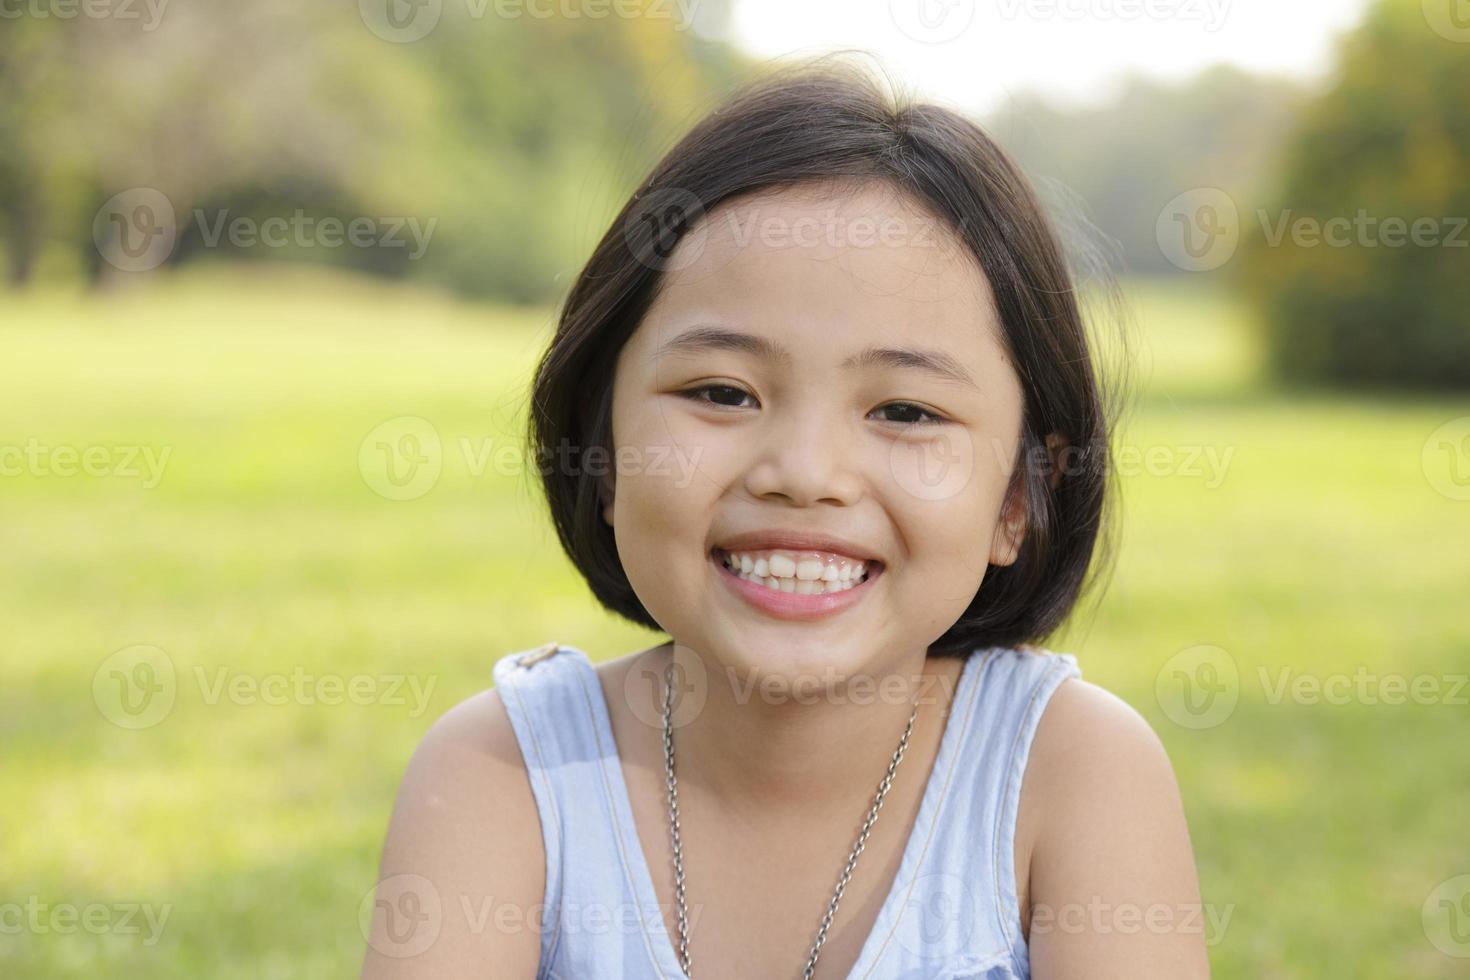 asiatisk liten flicka ler glatt i parken foto